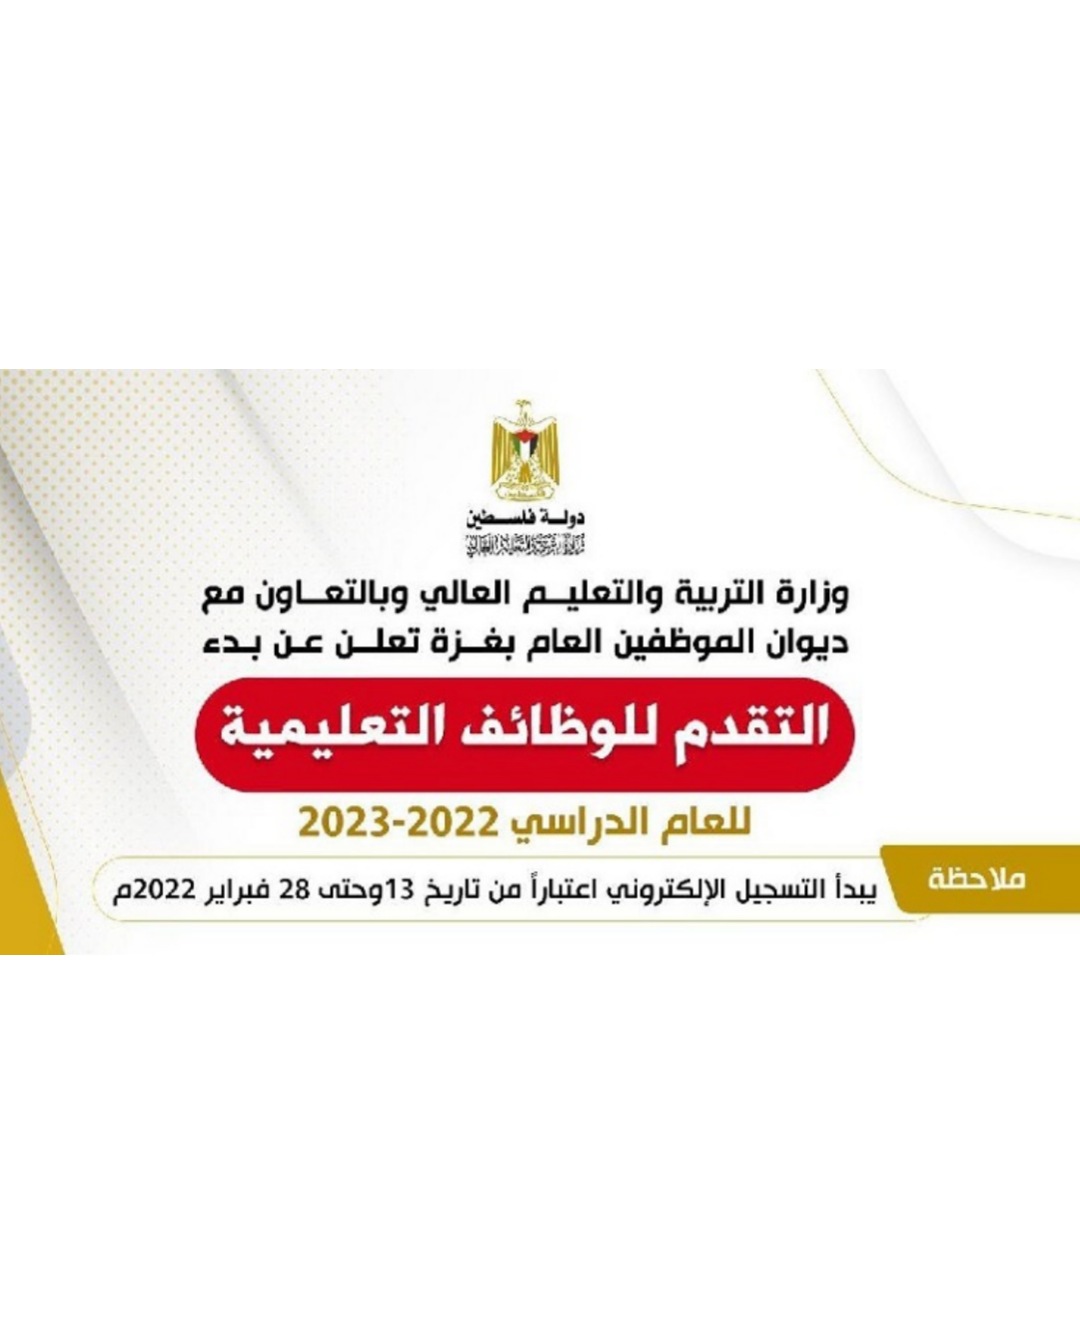 رابط التسجيل للوظائف التعليمية في قطاع غزة للعام 2023-2022 .. فبراير 2022